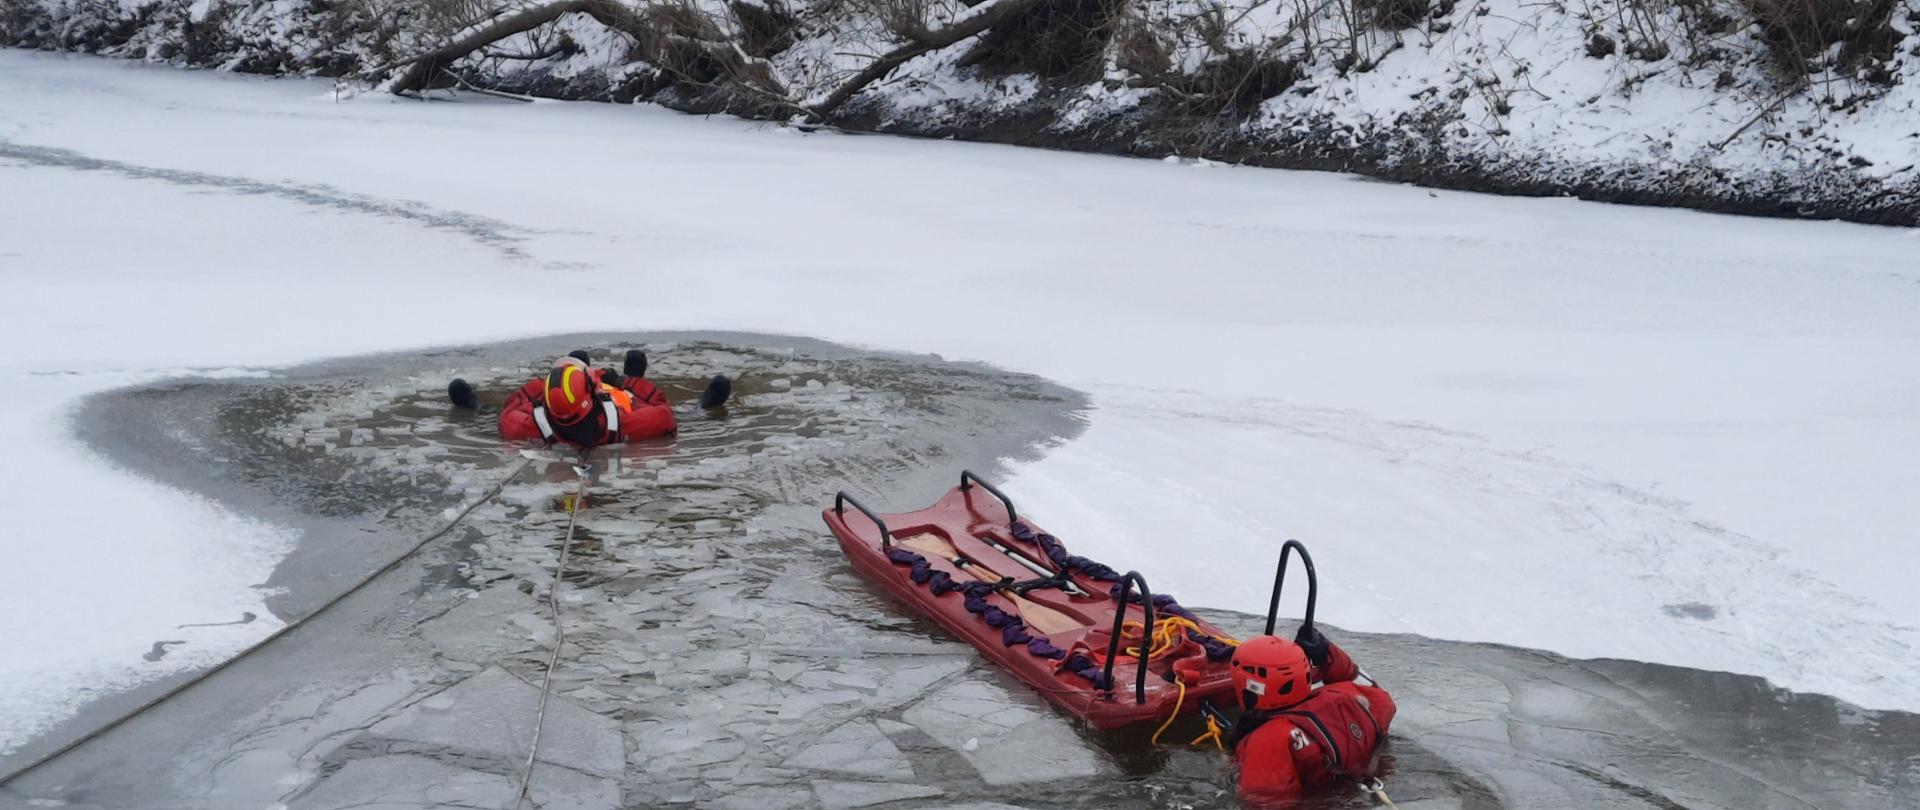 Strażacy przy użyciu posiadanego sprzętu z zakresu ratownictwa lodowego ćwiczą wydobywanie osób znajdujących w wodzie, pod załamanym lodem. 